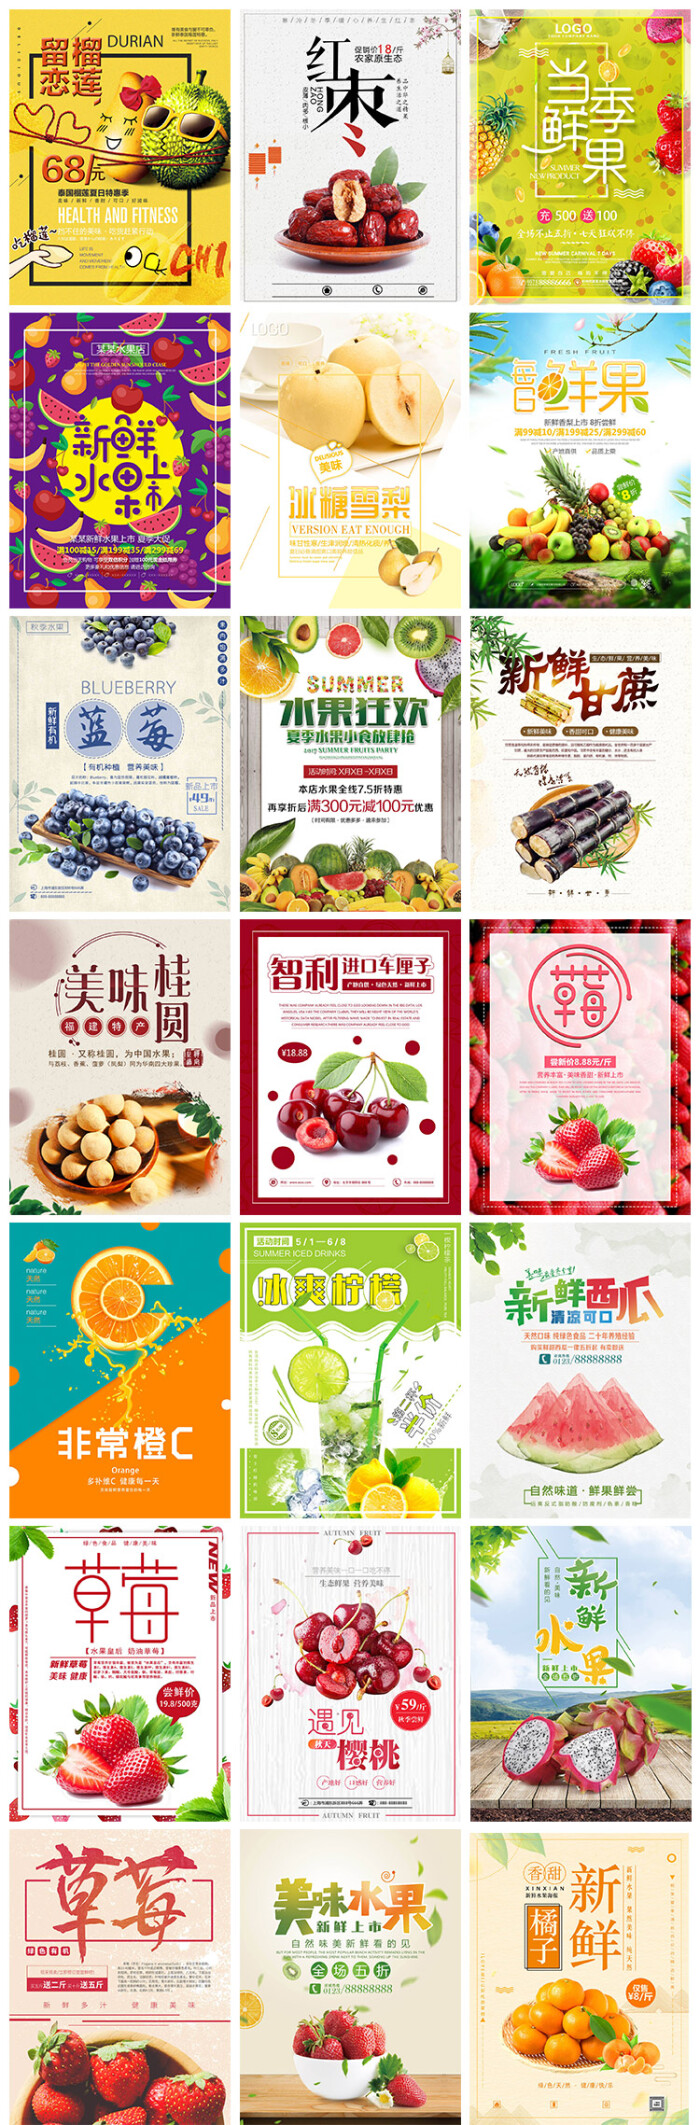 新鲜水果清新商店超市促销草莓桂圆葡萄樱桃海报设计psd模板素材